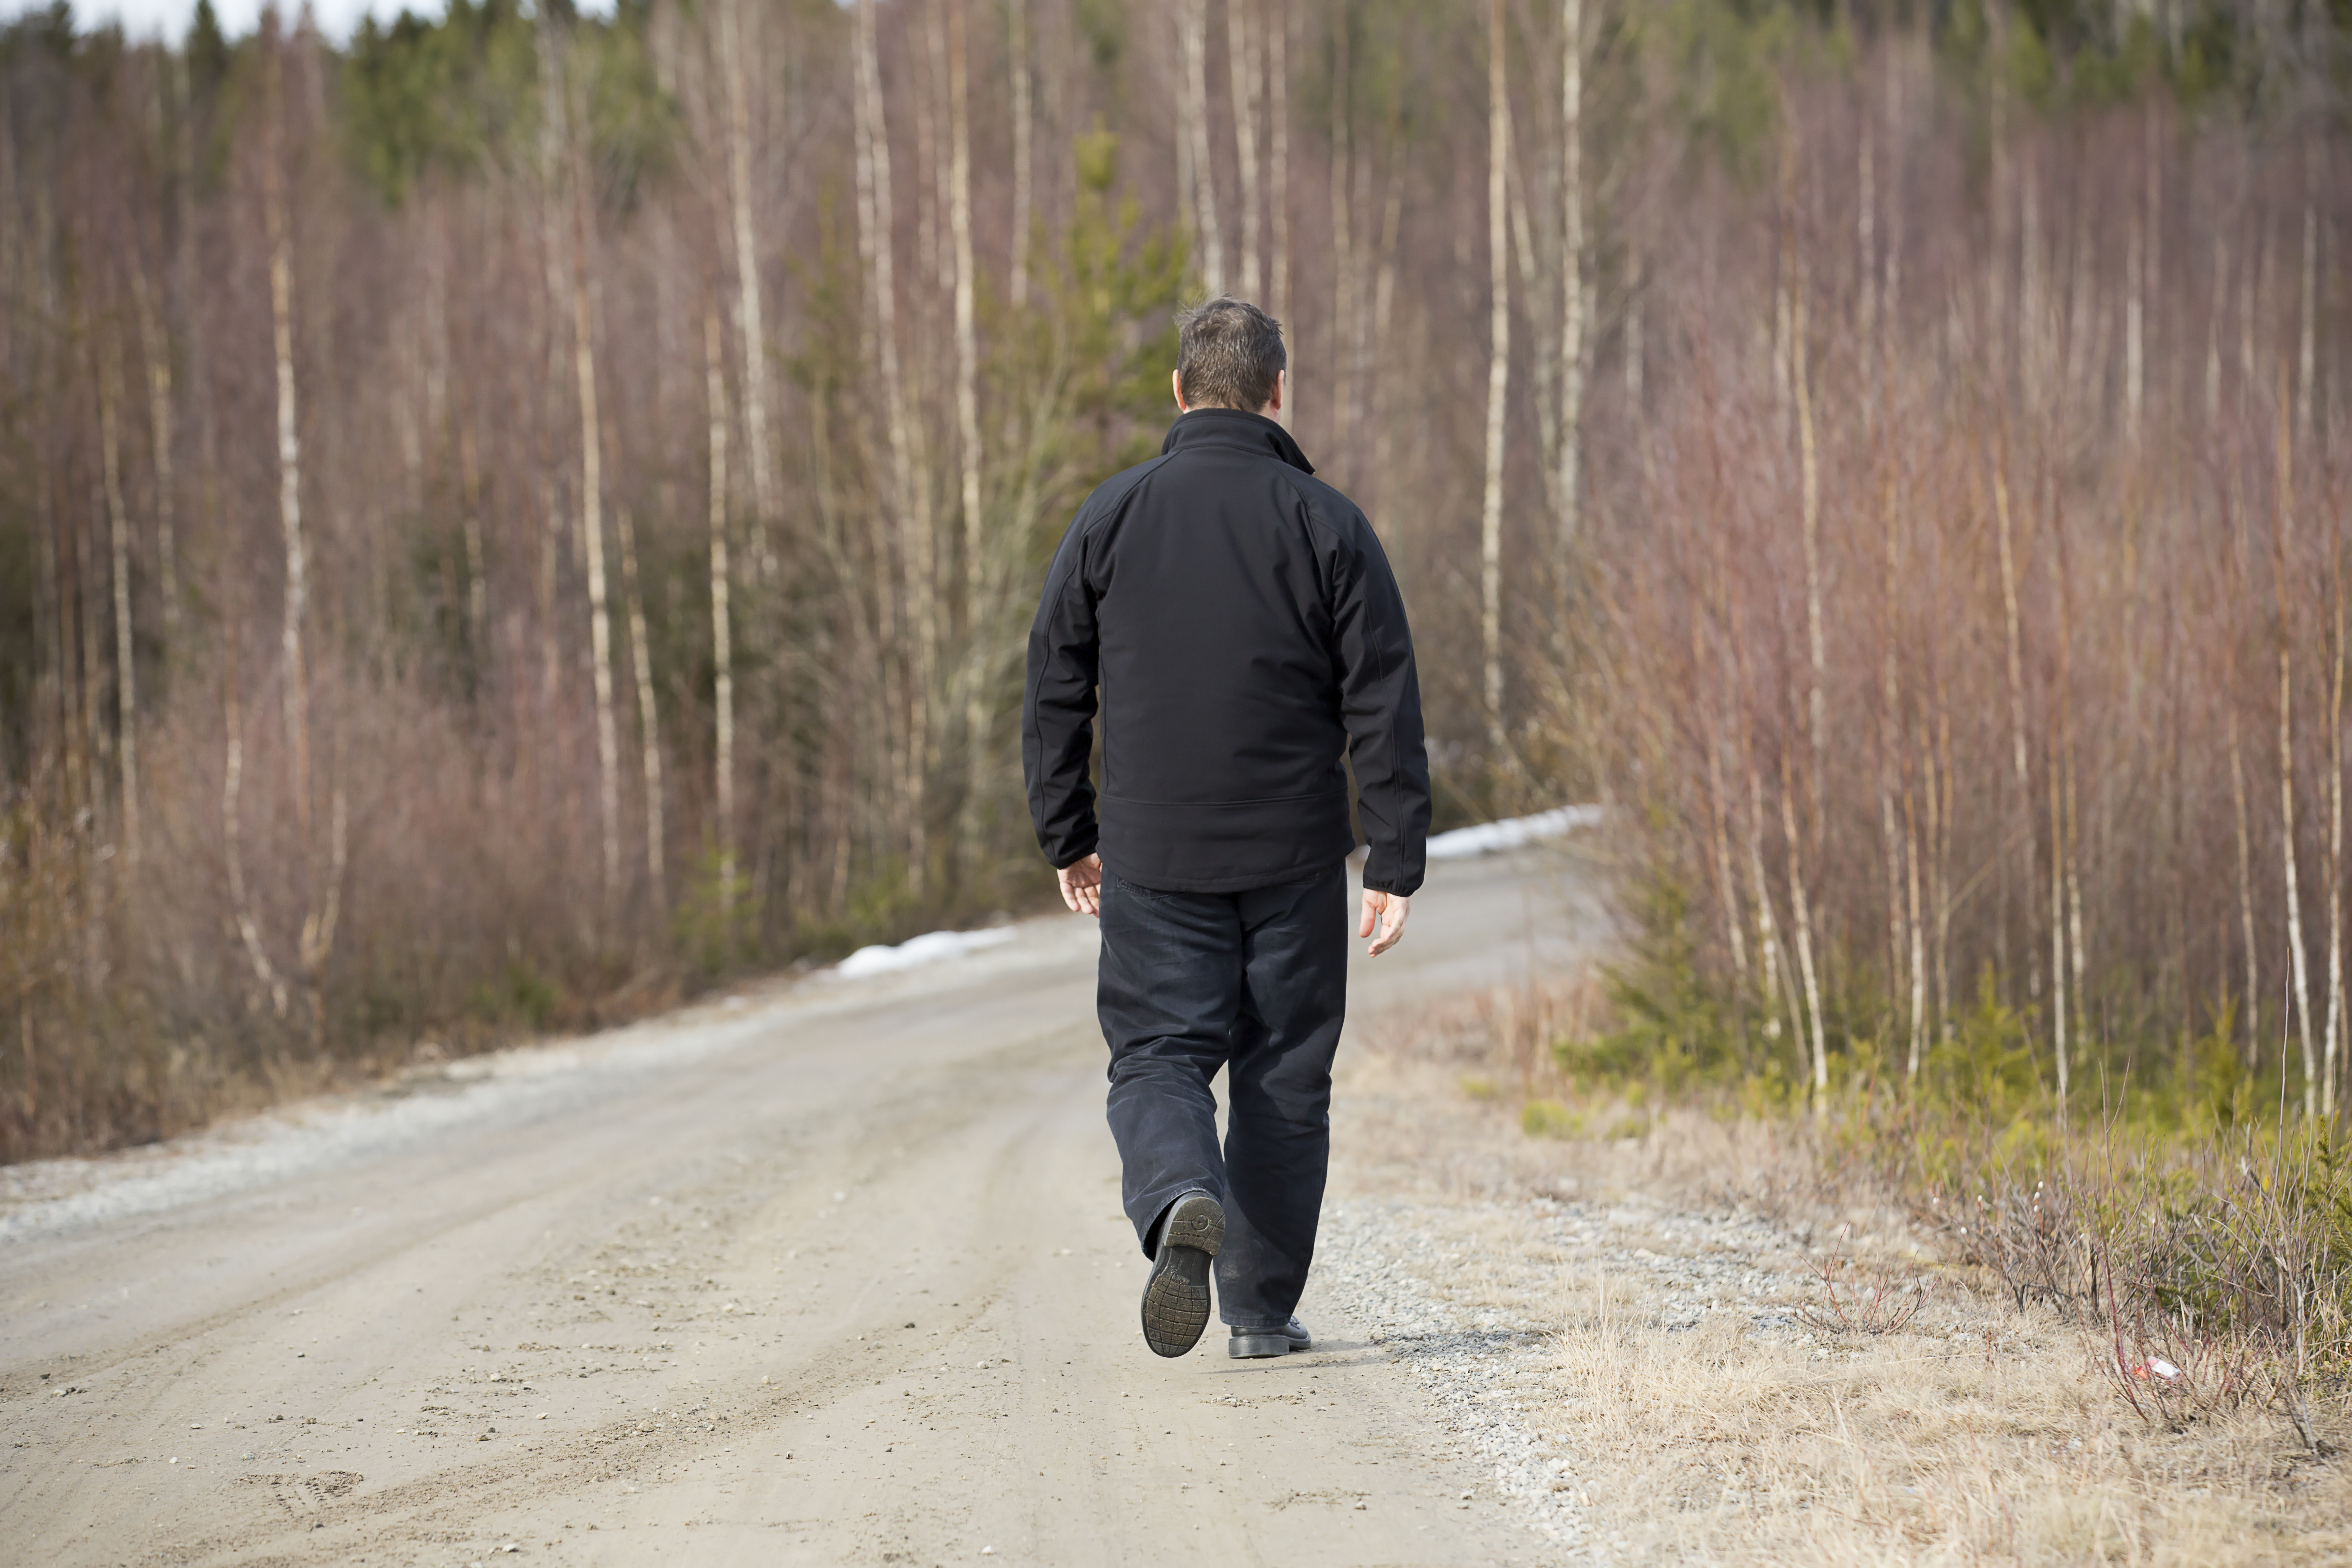 Man Walking On Road. | Source: Shutterstock